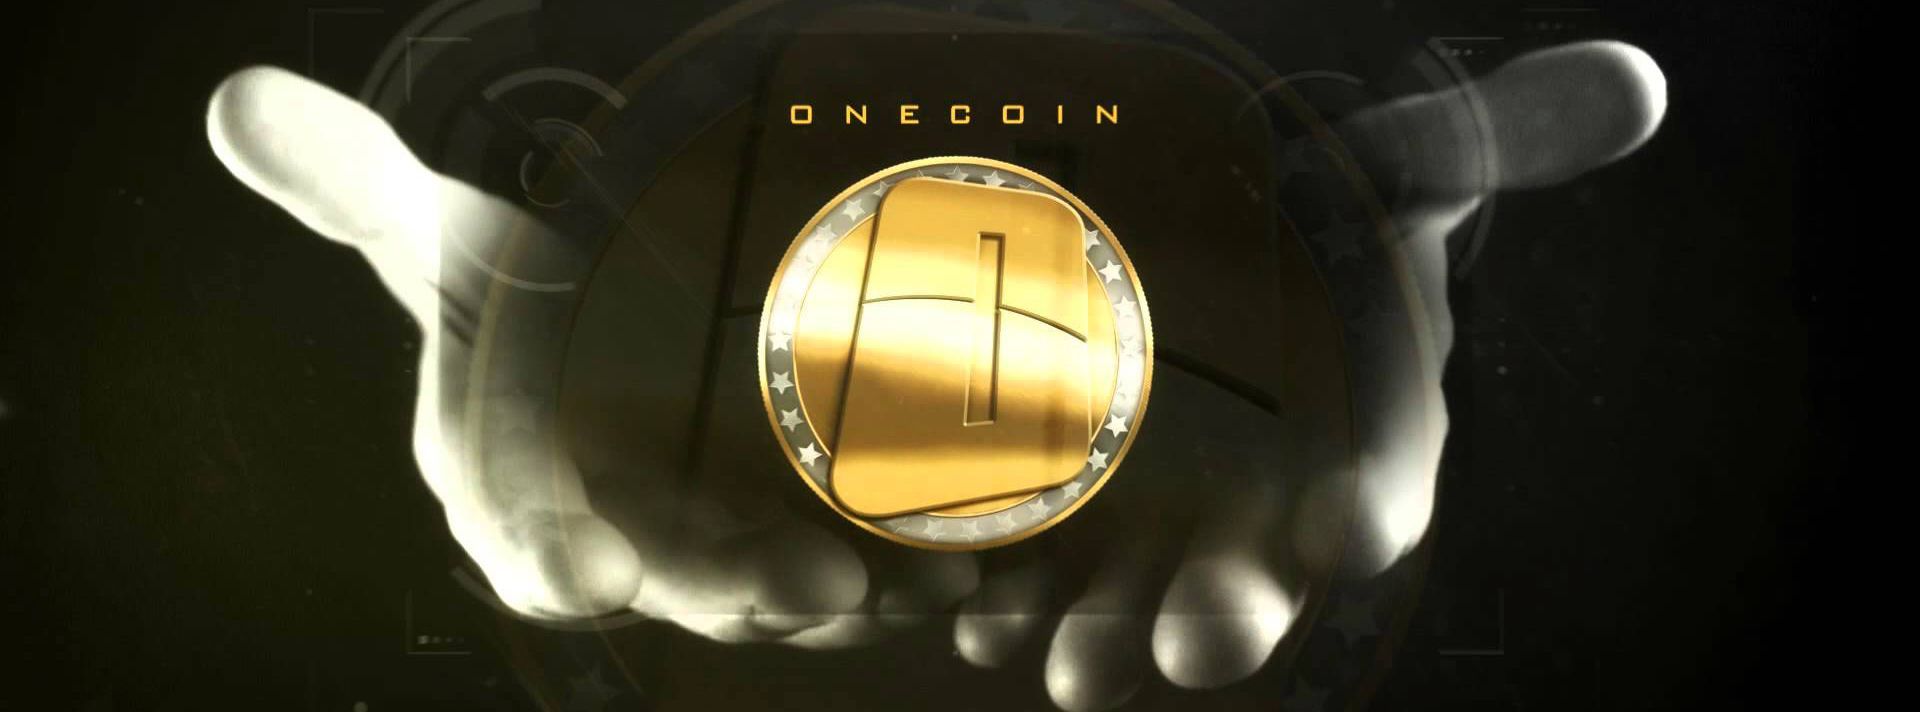 BaFin cấm đối tác OneCoin tại Đức, có khả năng phạt 1,5 triệu euro